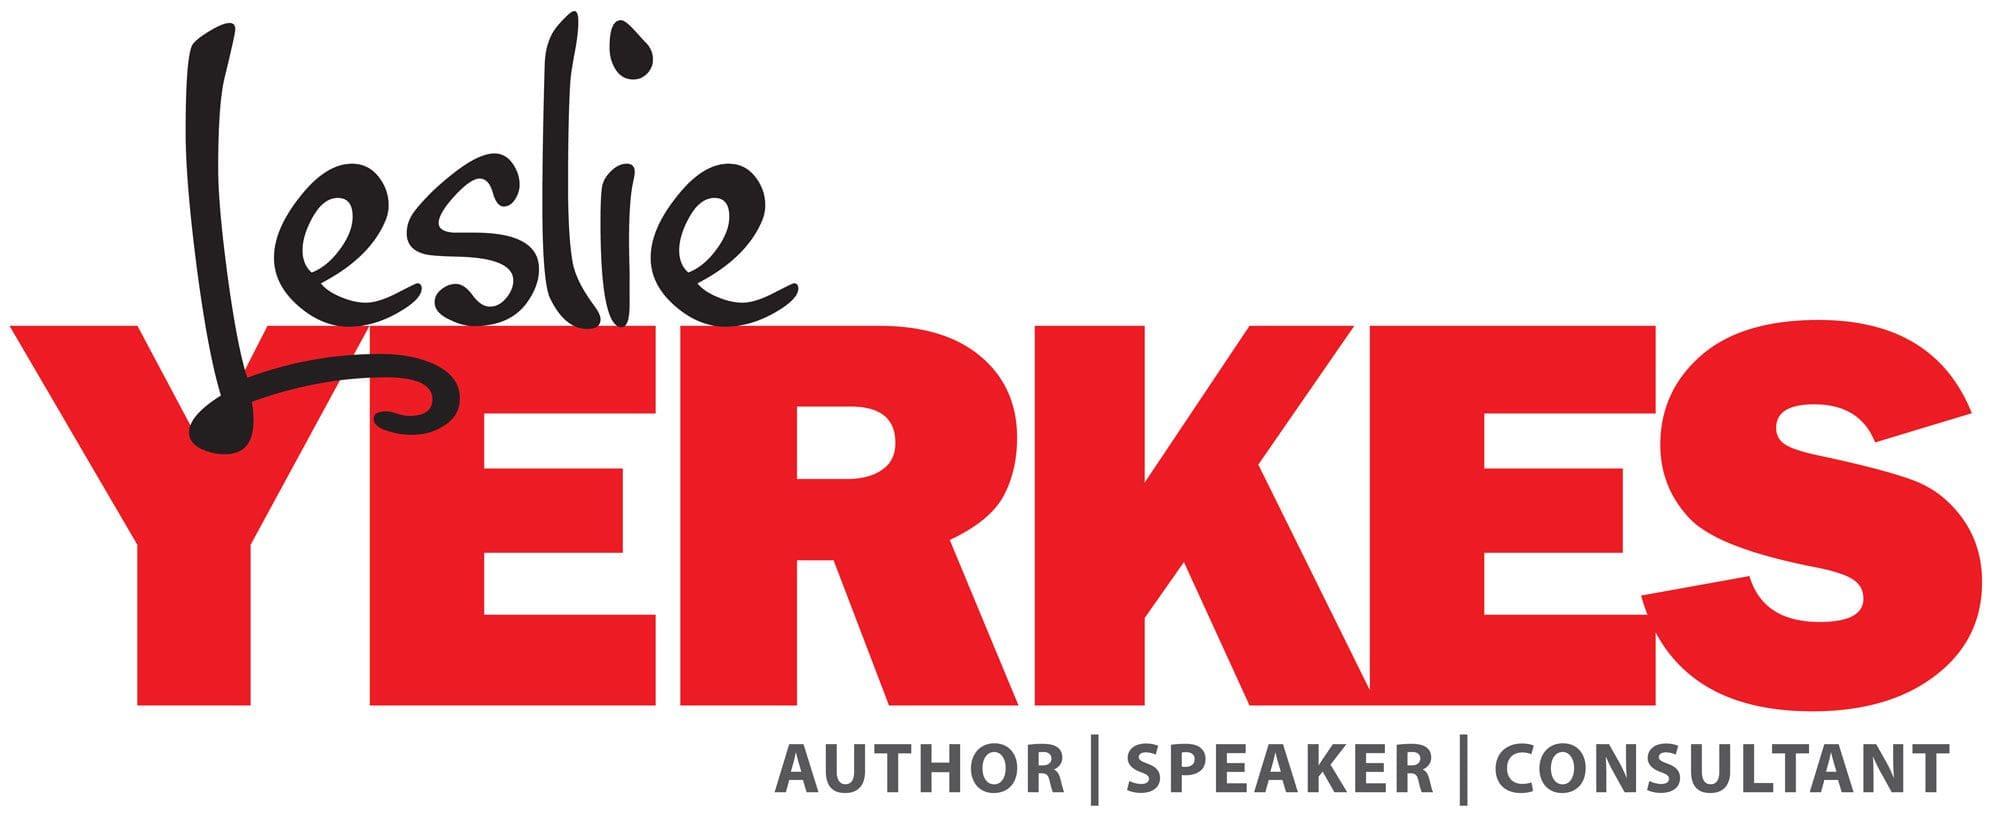 Leslie Yerkes | Author-Speaker-Consultant